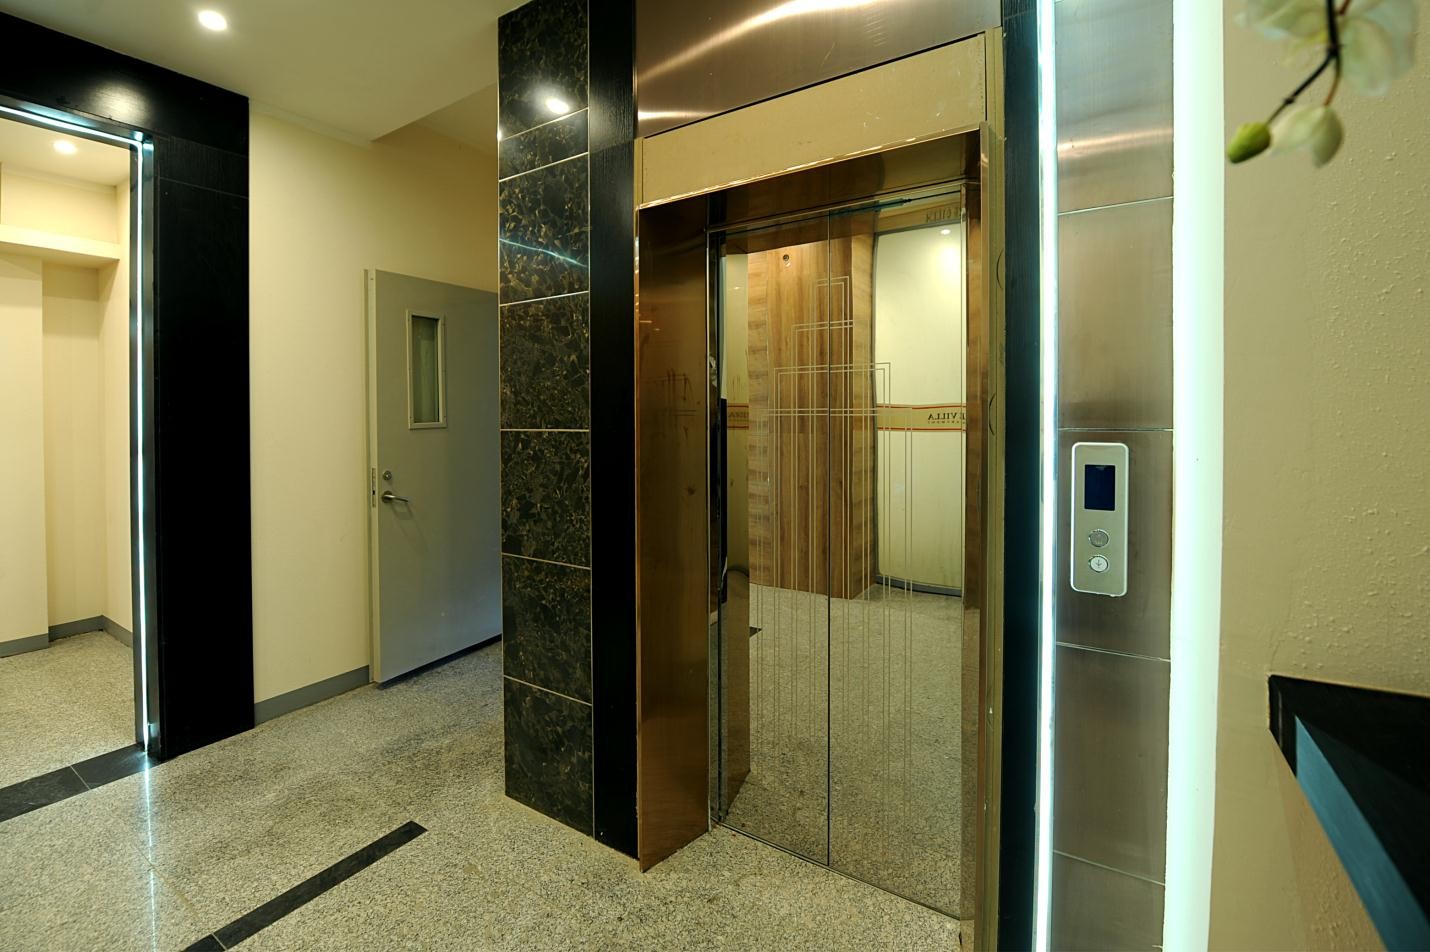 Германы Braun брэндийн Чанарын илэрхийлэл болсон лифтээр тоноглосон